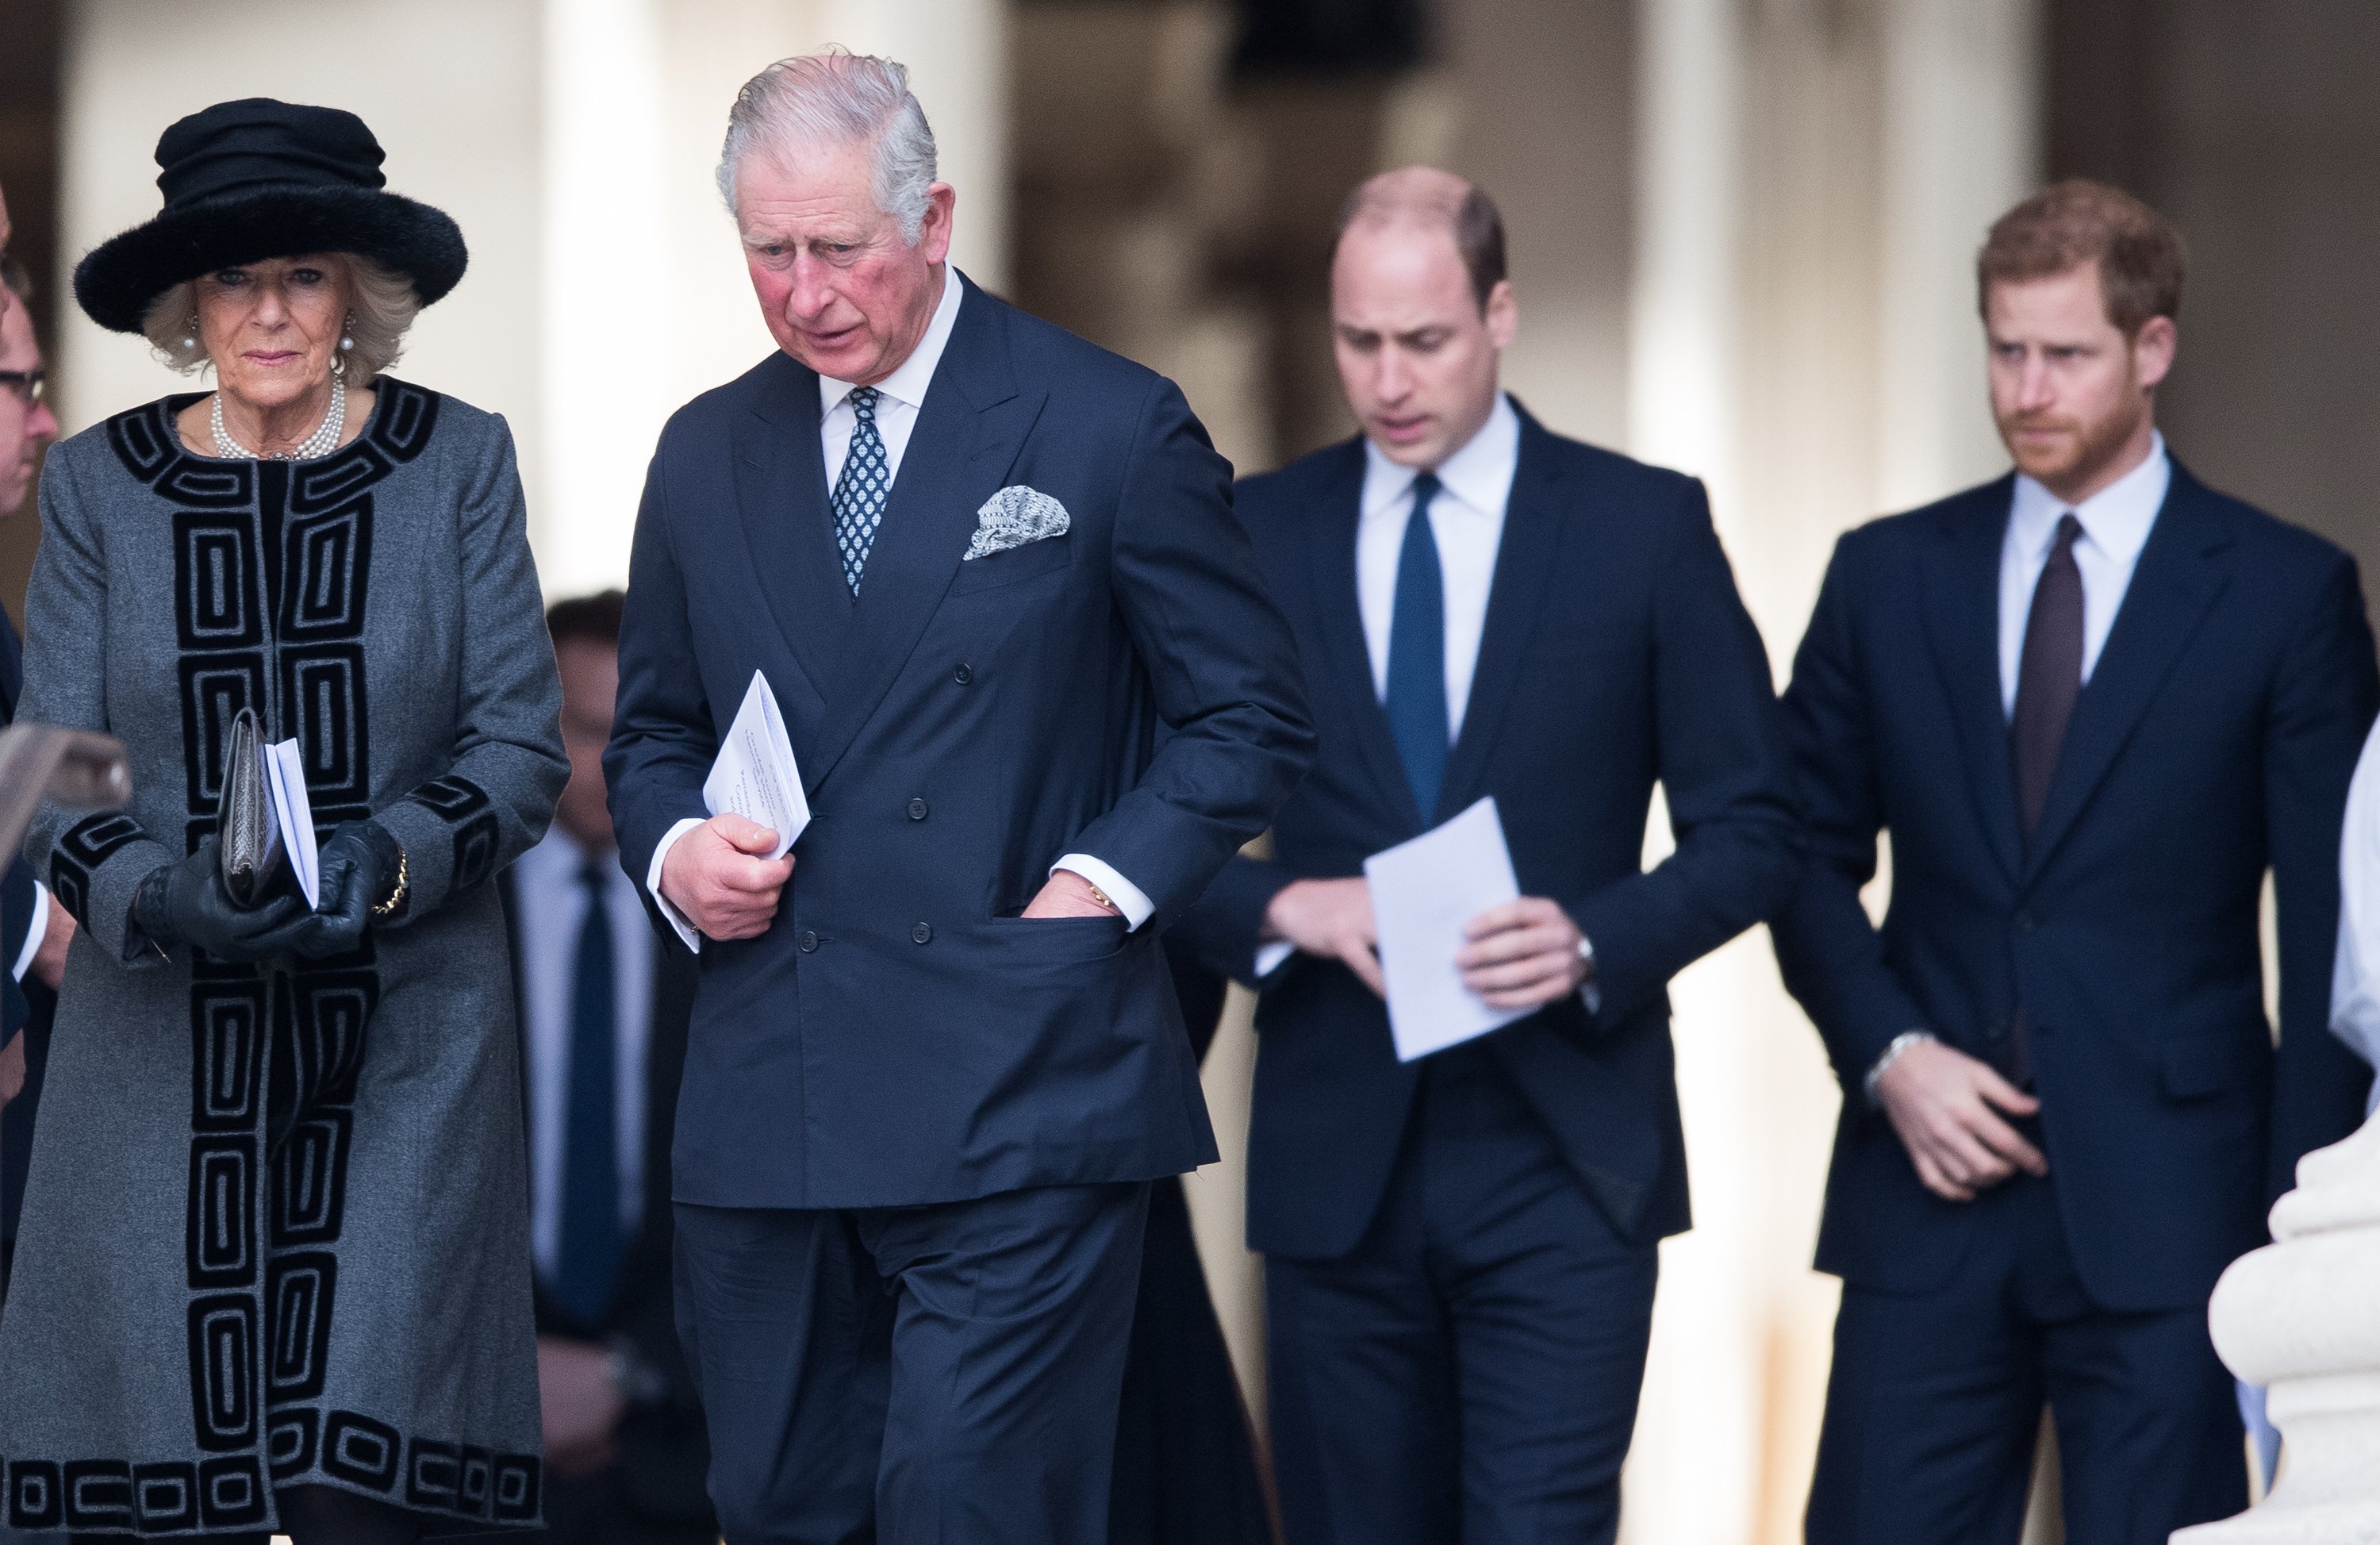 König Charles III., Königingemahlin Camilla, Prinz William und Prinz Harry in London 2017. | Quelle: Getty Images